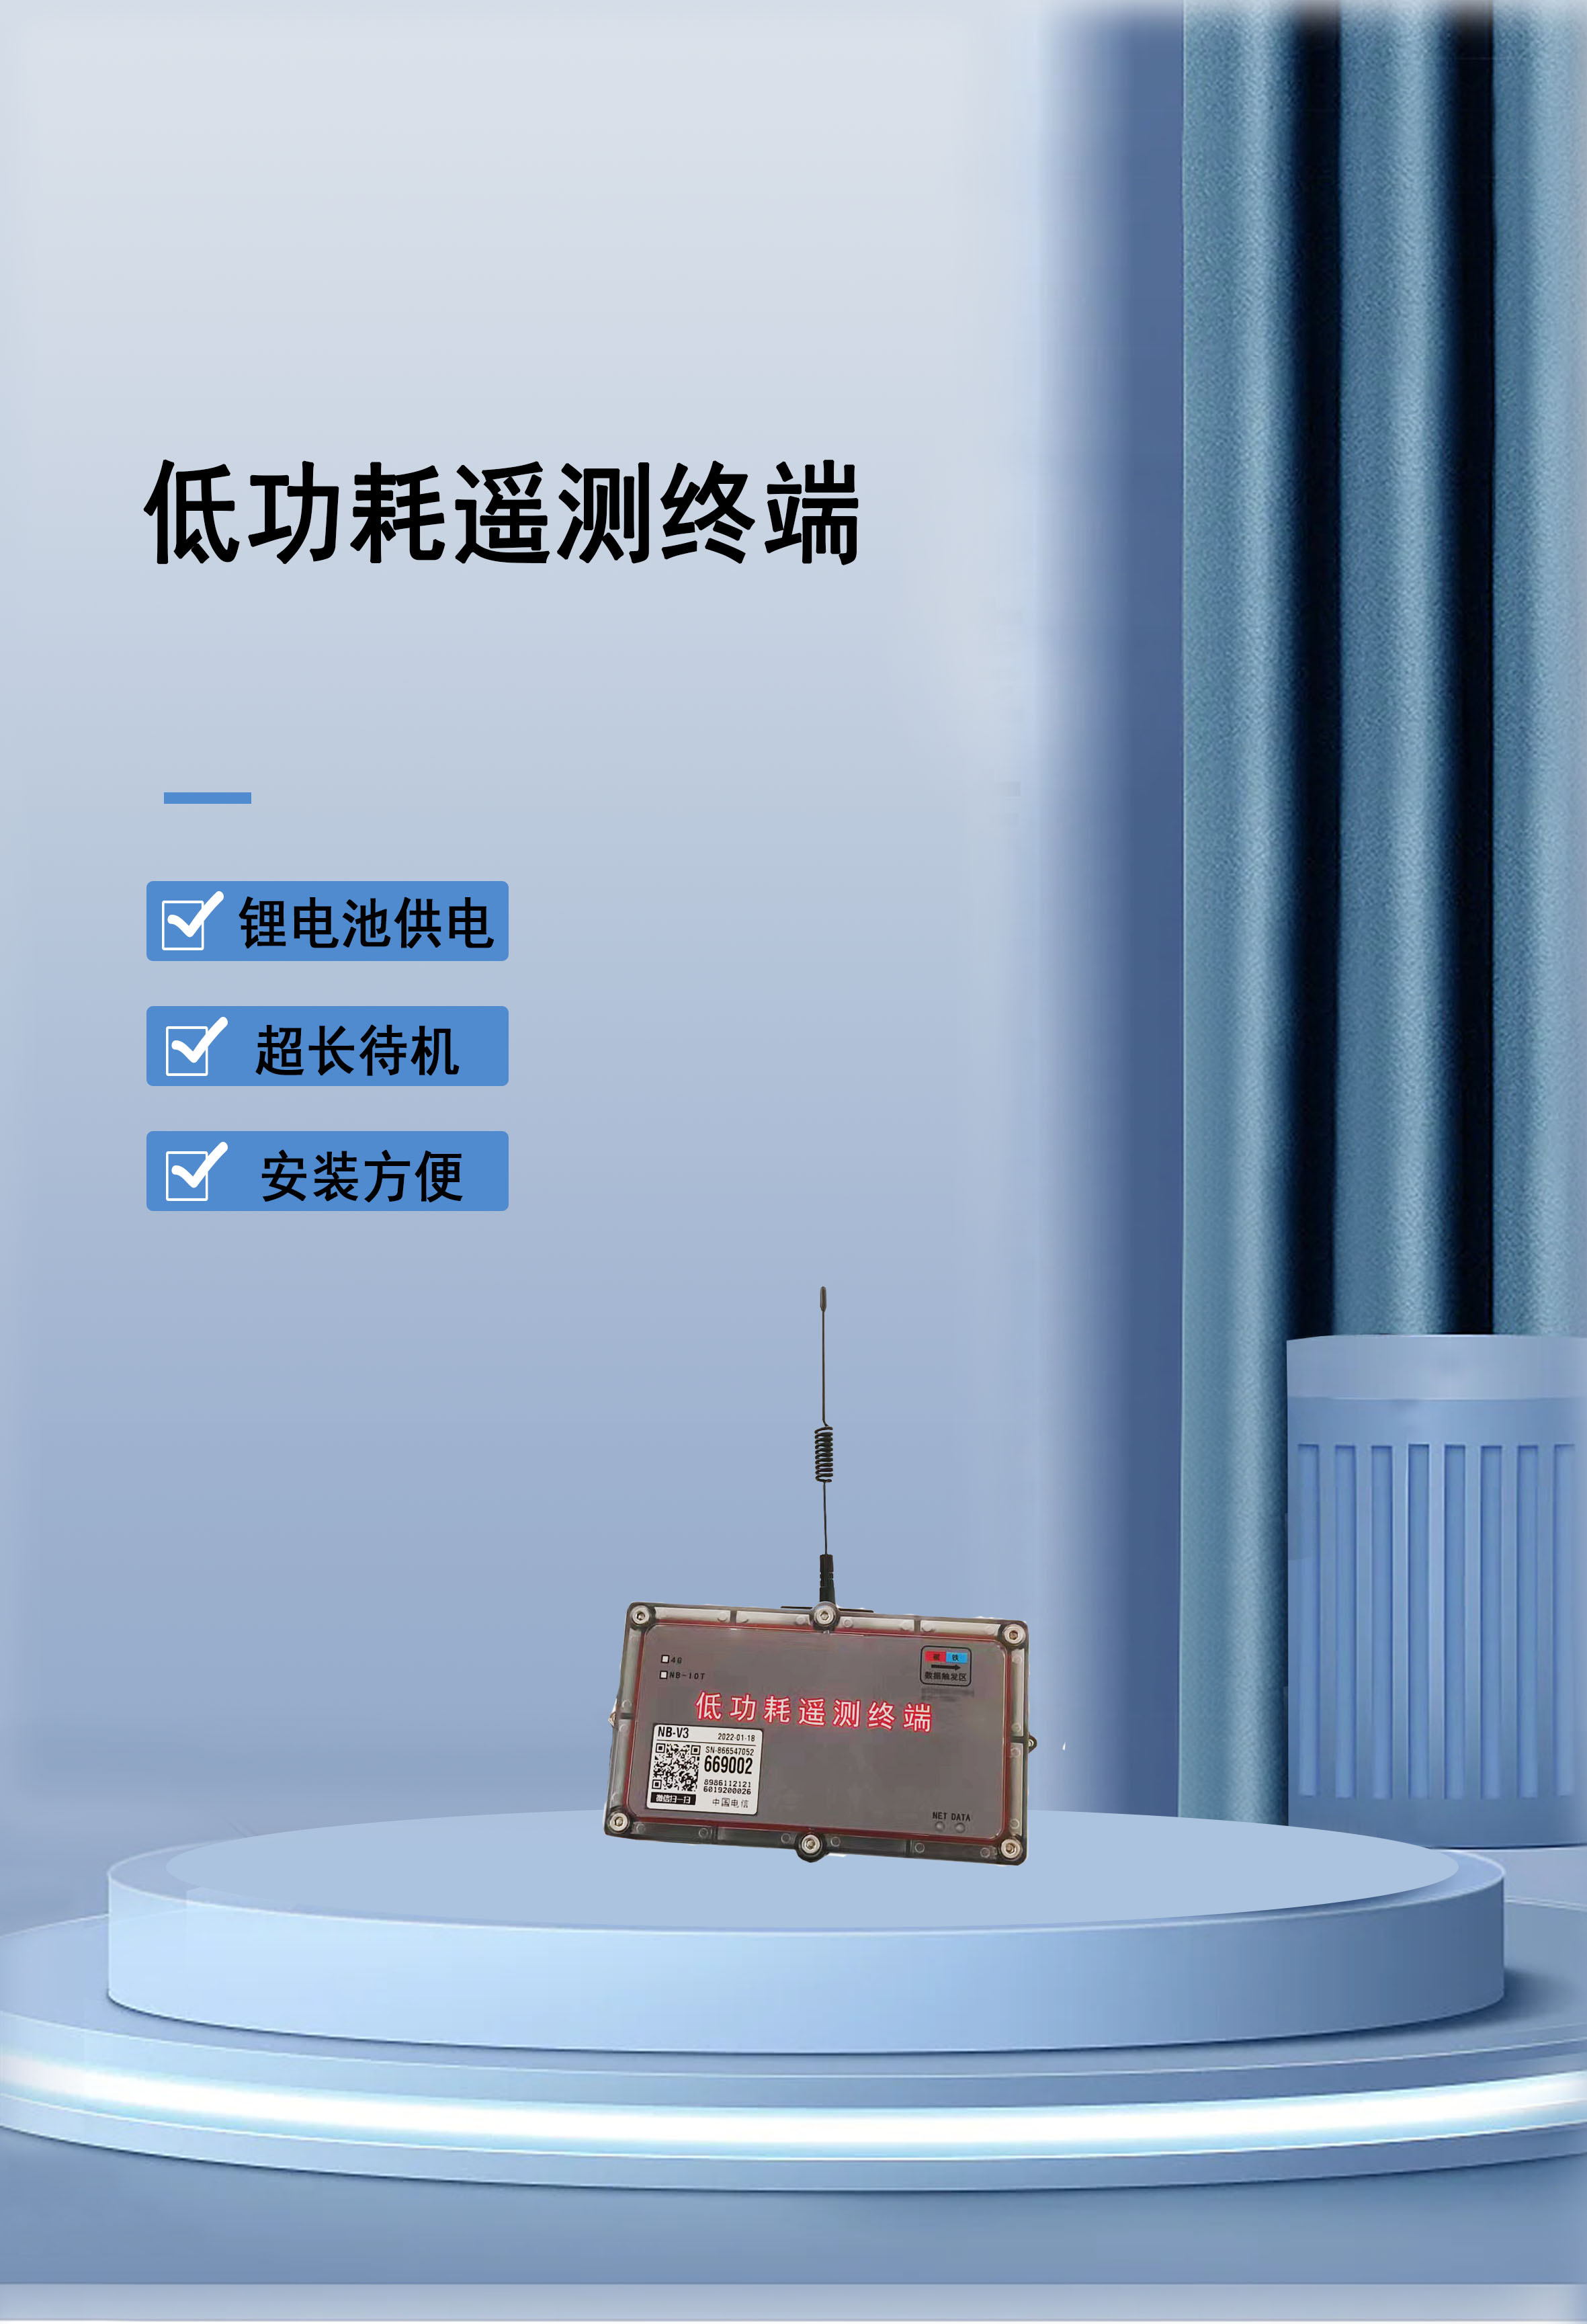 北京石景山区无线数据通信RTU当曲数据传输无线远传微功耗设计